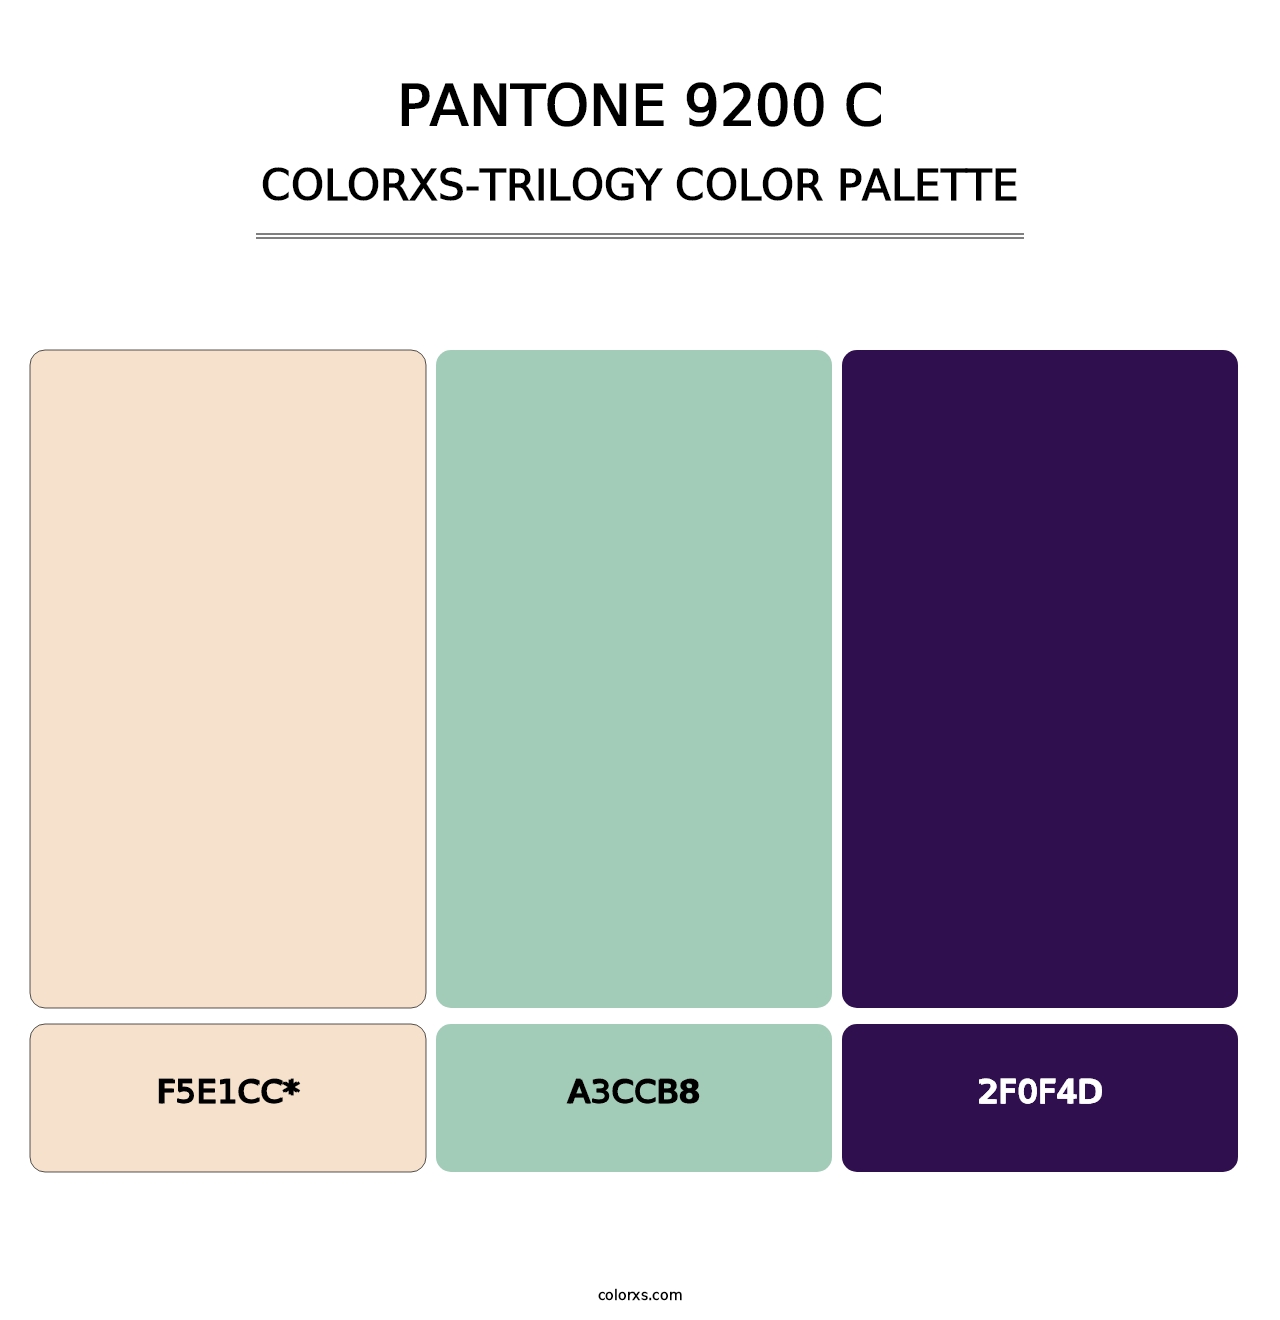 PANTONE 9200 C - Colorxs Trilogy Palette